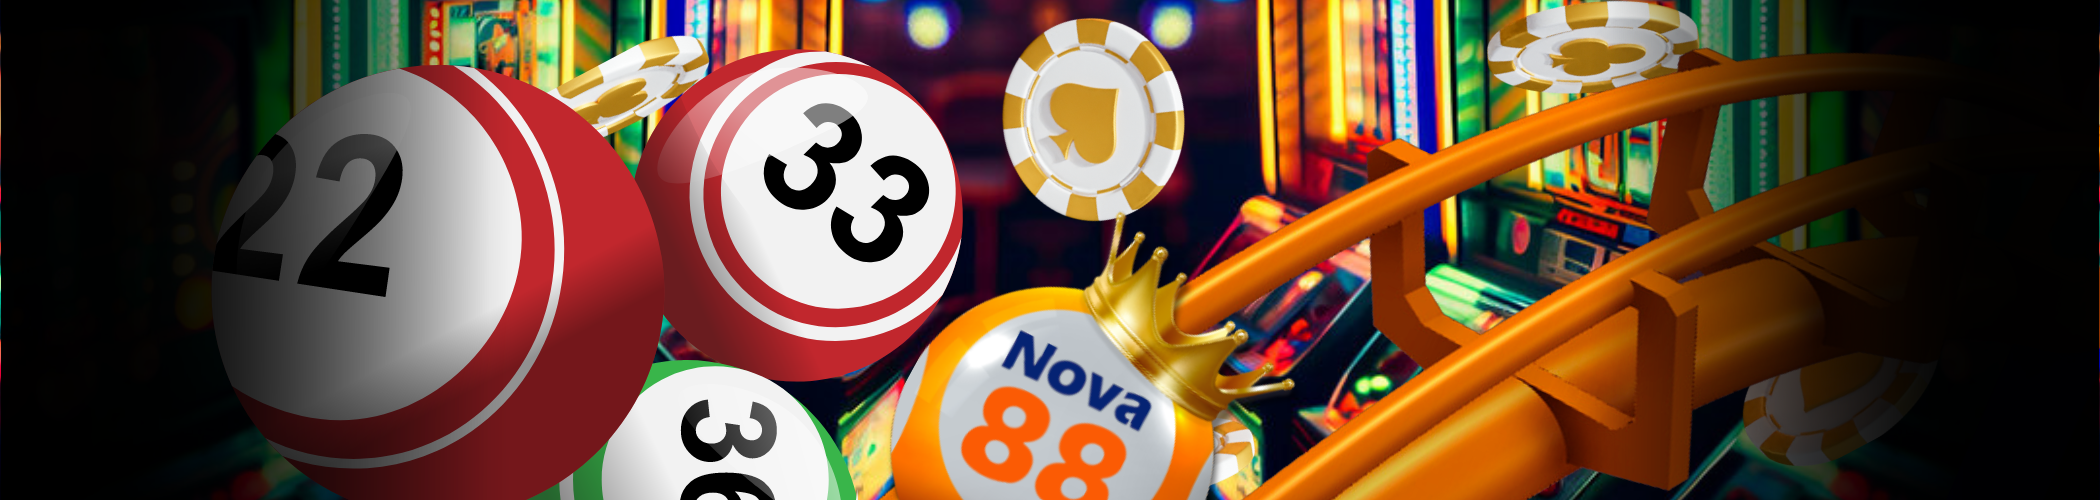 Nova88 Keno / Lottery Banner Nova88 Online Lottery Jackpot Poster Banner Nova88 Keno Lottery Banner